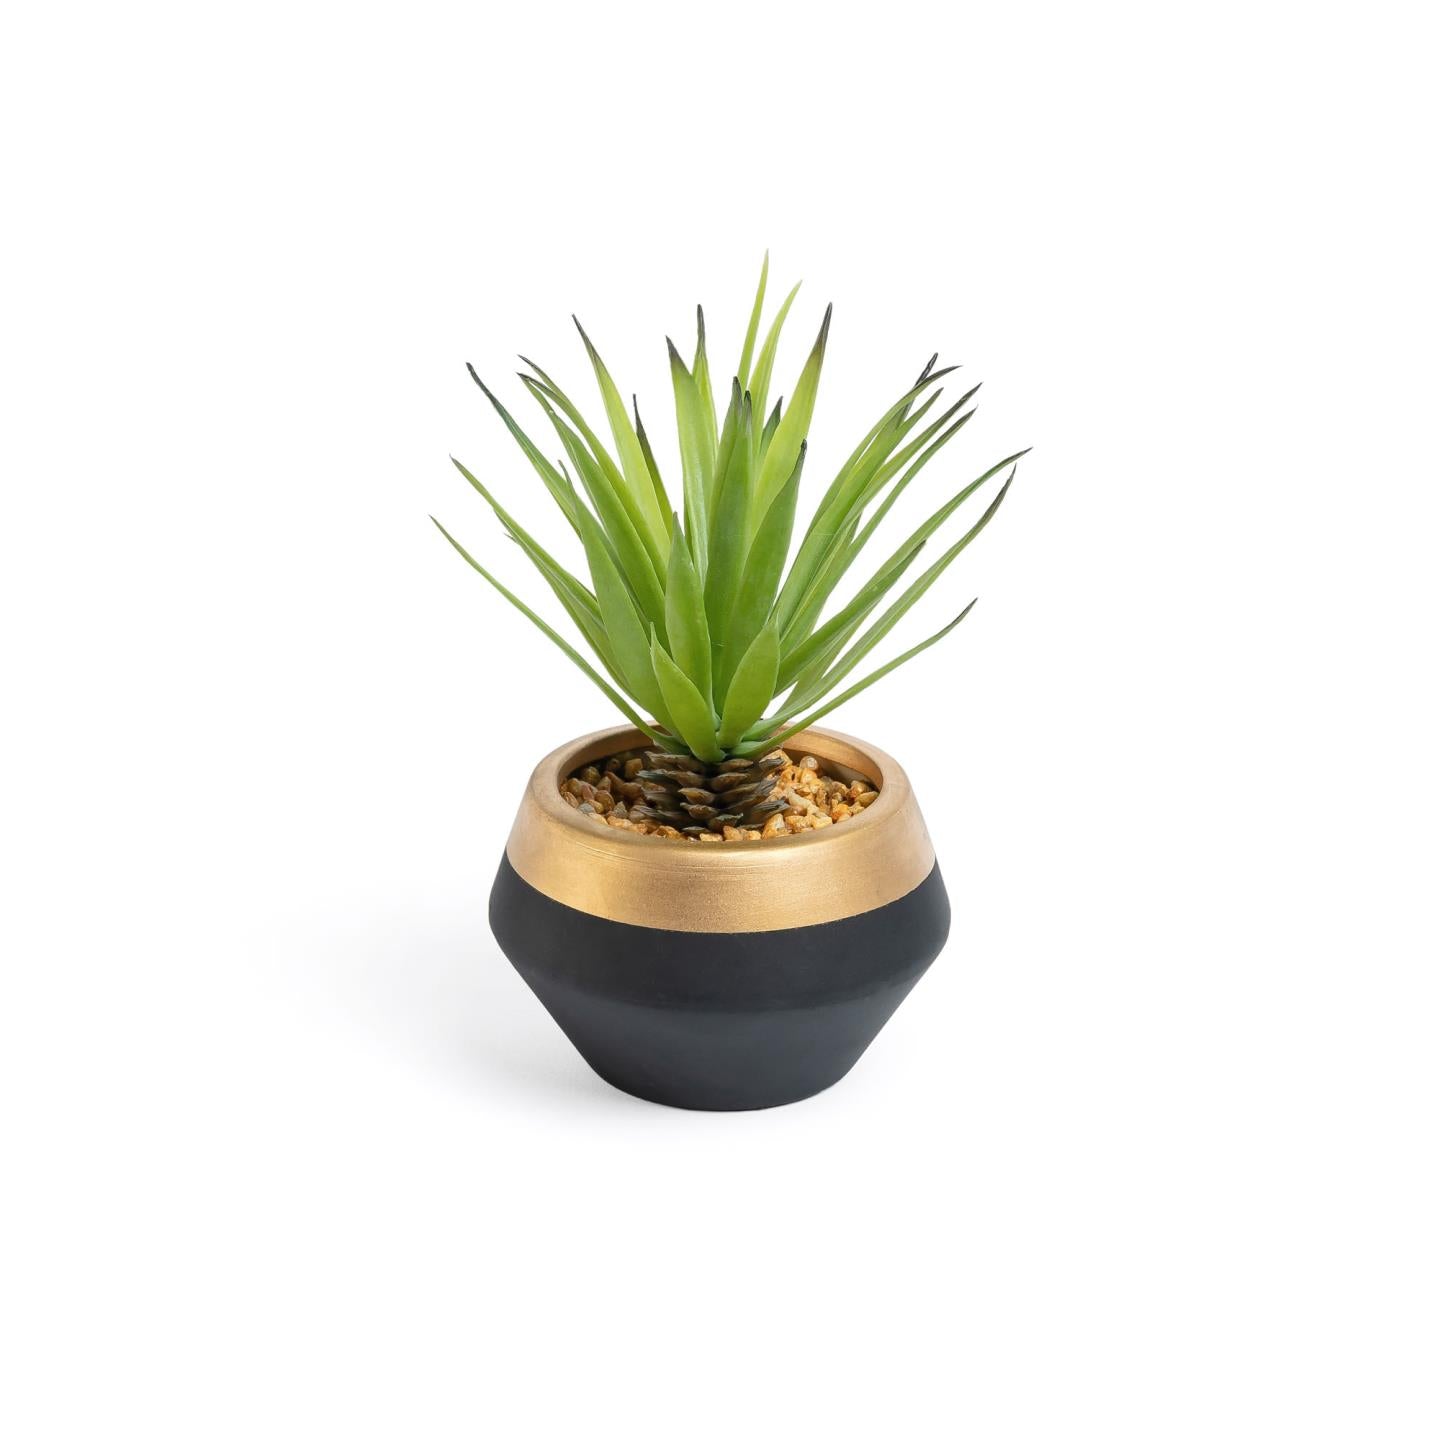 Petite plante artificielle Palmera en pot en céramique noir et doré